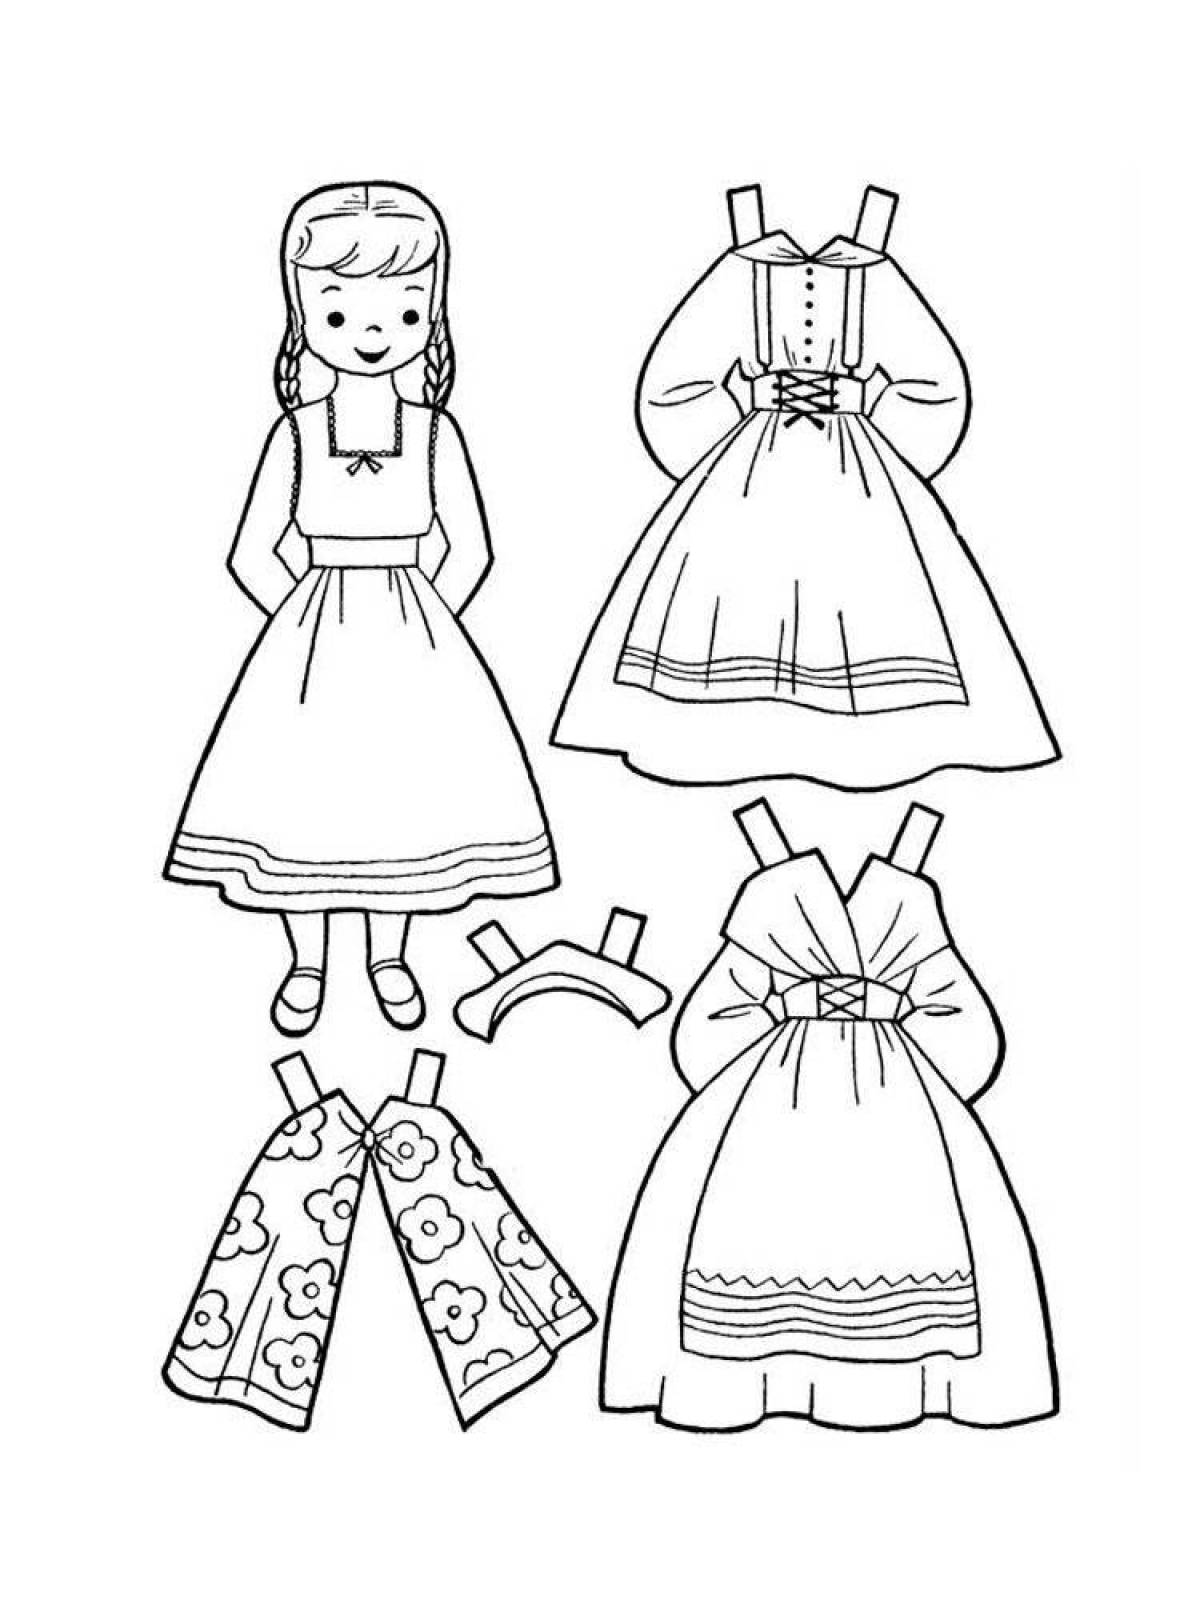 Шаблон куклы для вырезания из бумаги распечатать. Раскраска платье. Раскраска платье для куклы. Платья для бумажных кукол. Платье для бумажной куклы раскраска.